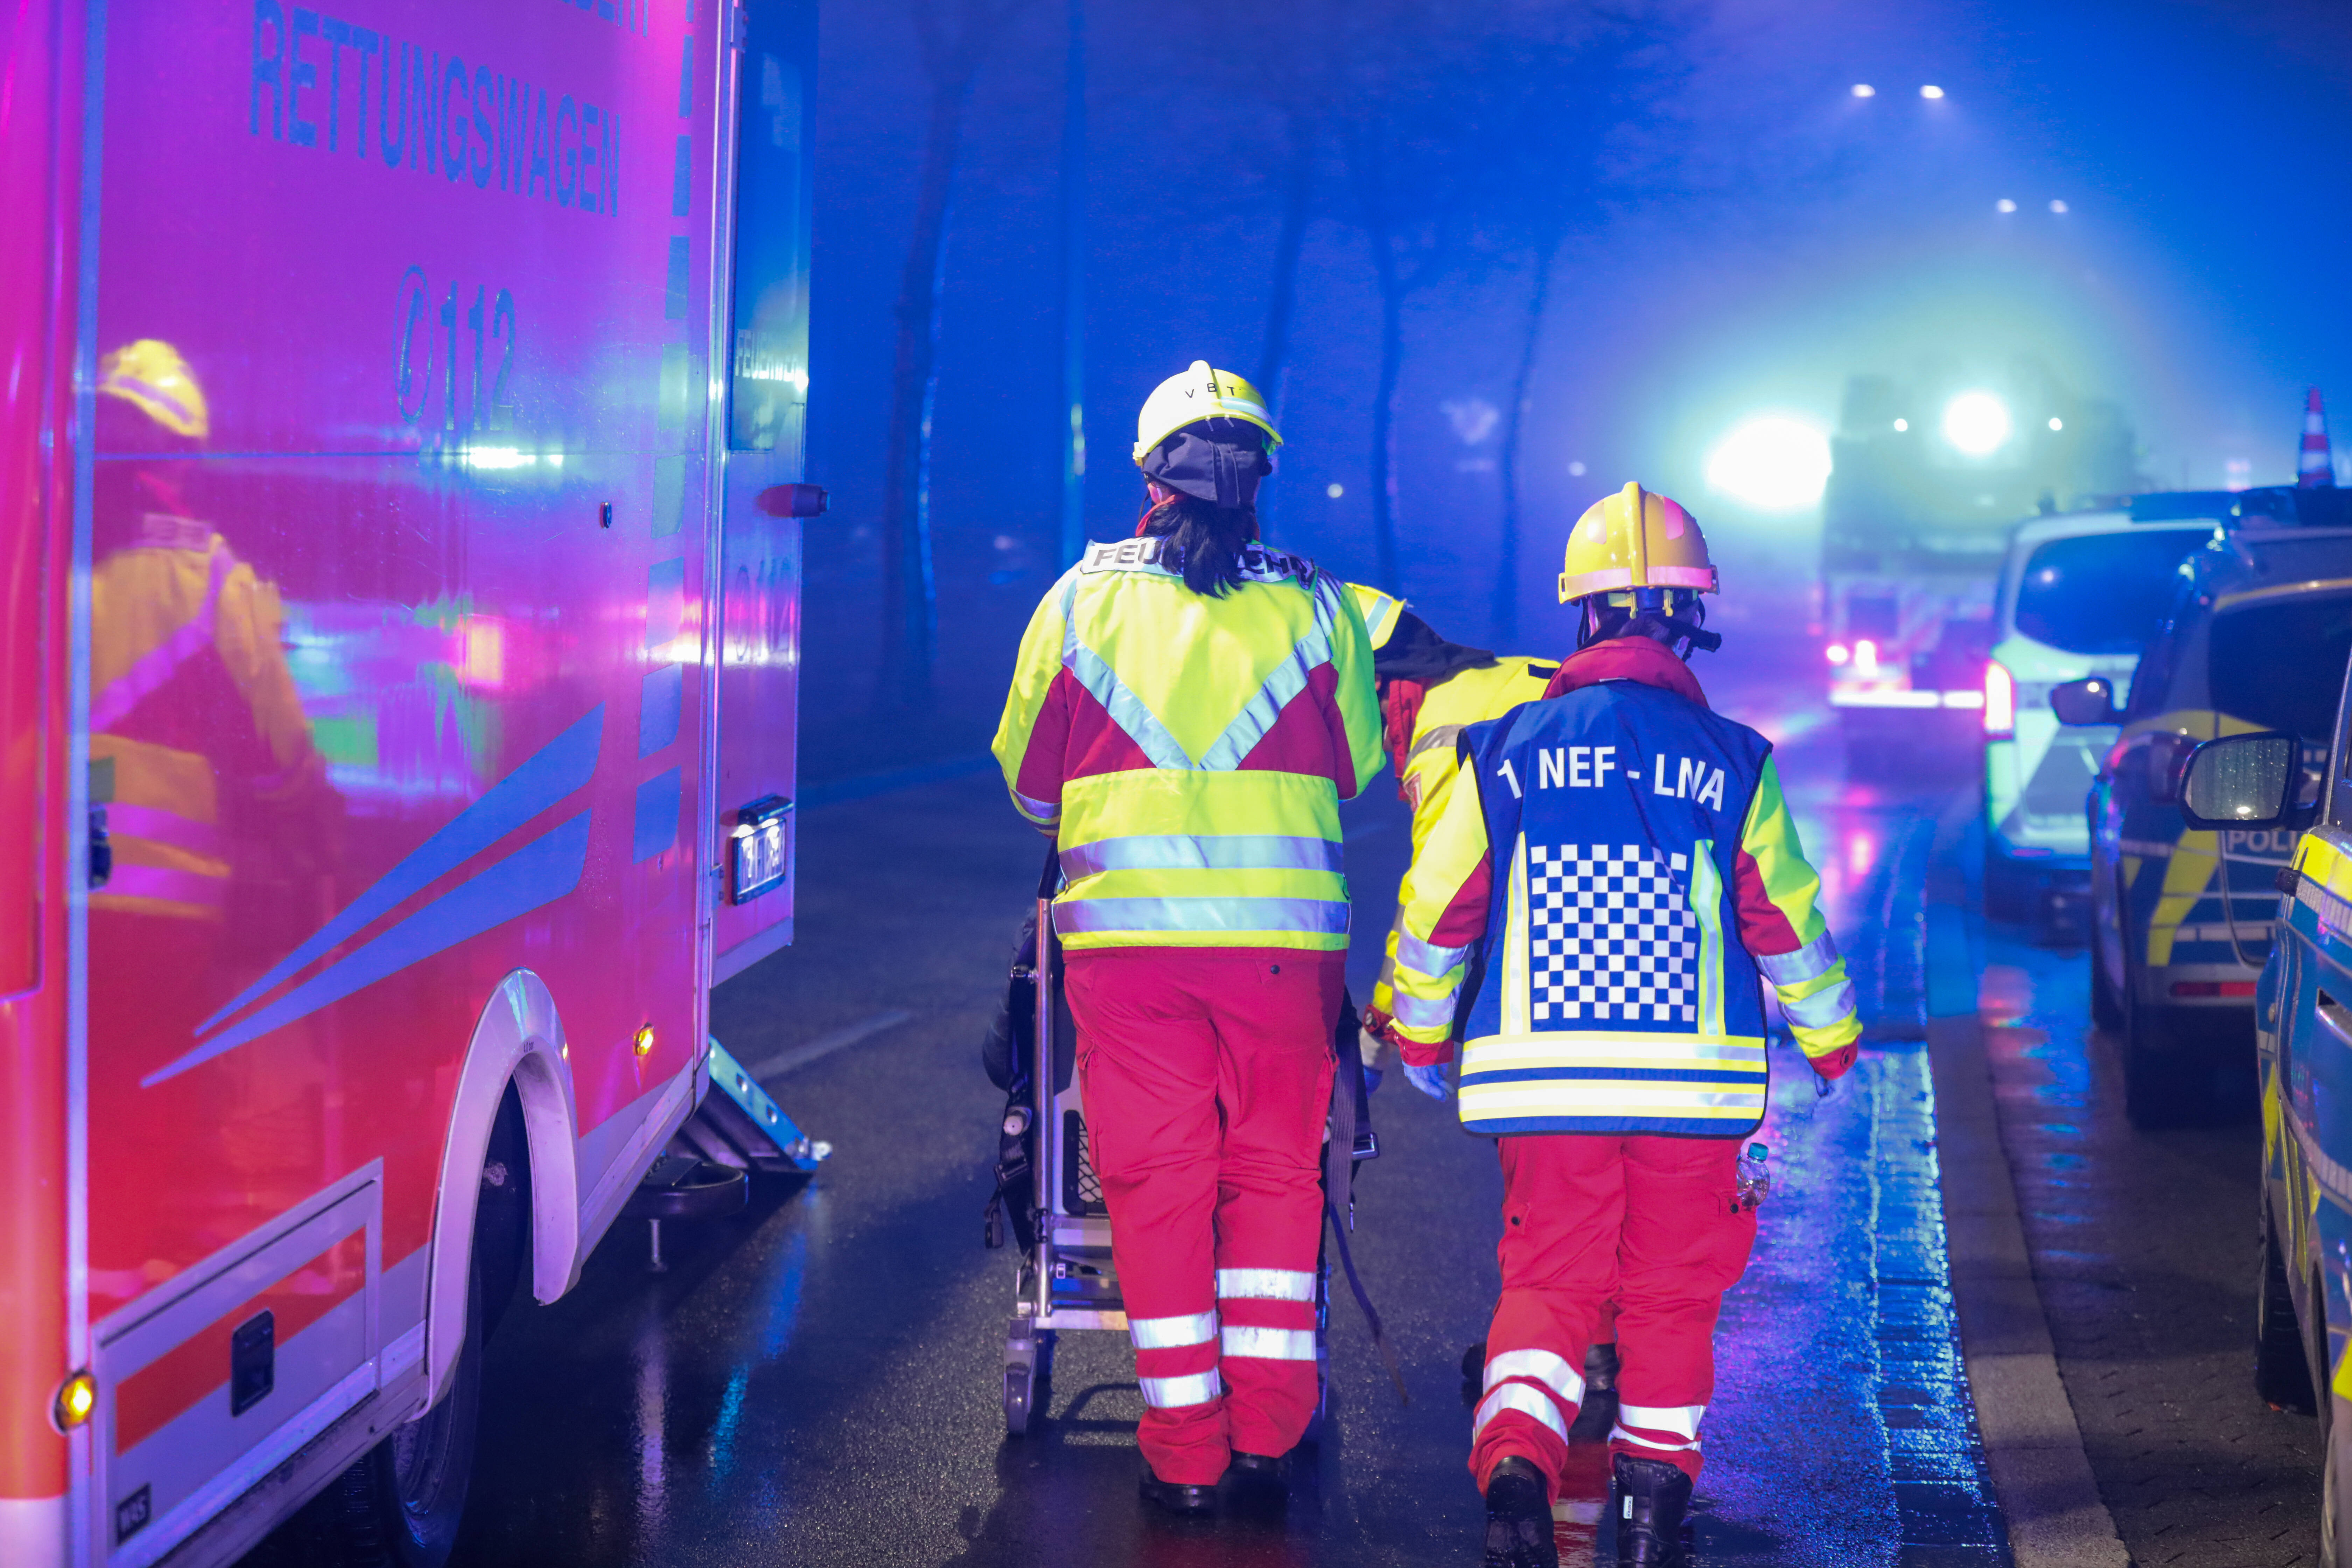 Cabrio überschlägt sich, kleiner Junge stirbt! Grausamer Unfall in Frankfurt - 8-jähriger Junge tot